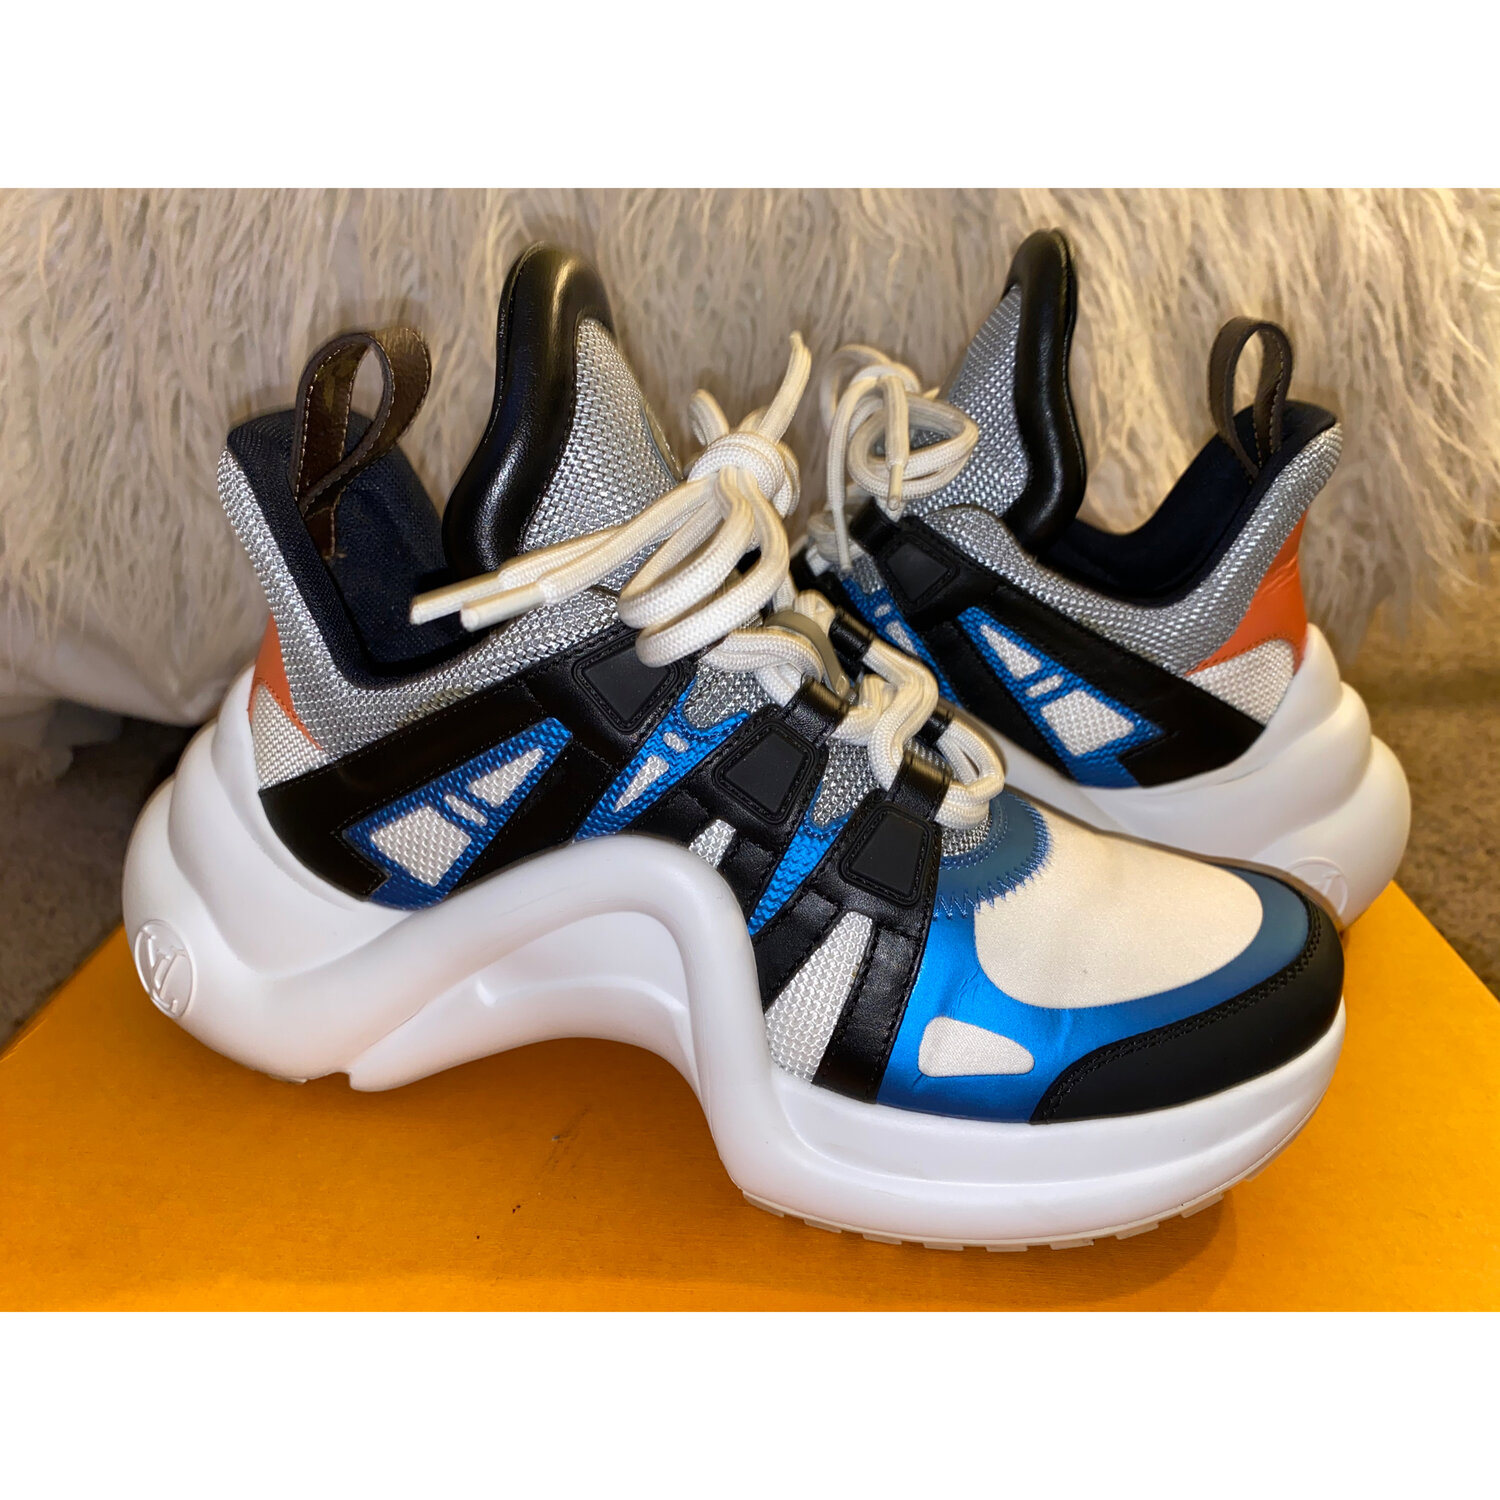 Louis Vuitton, Shoes, Louis Vuitton Archlight Sneakers Blue 85